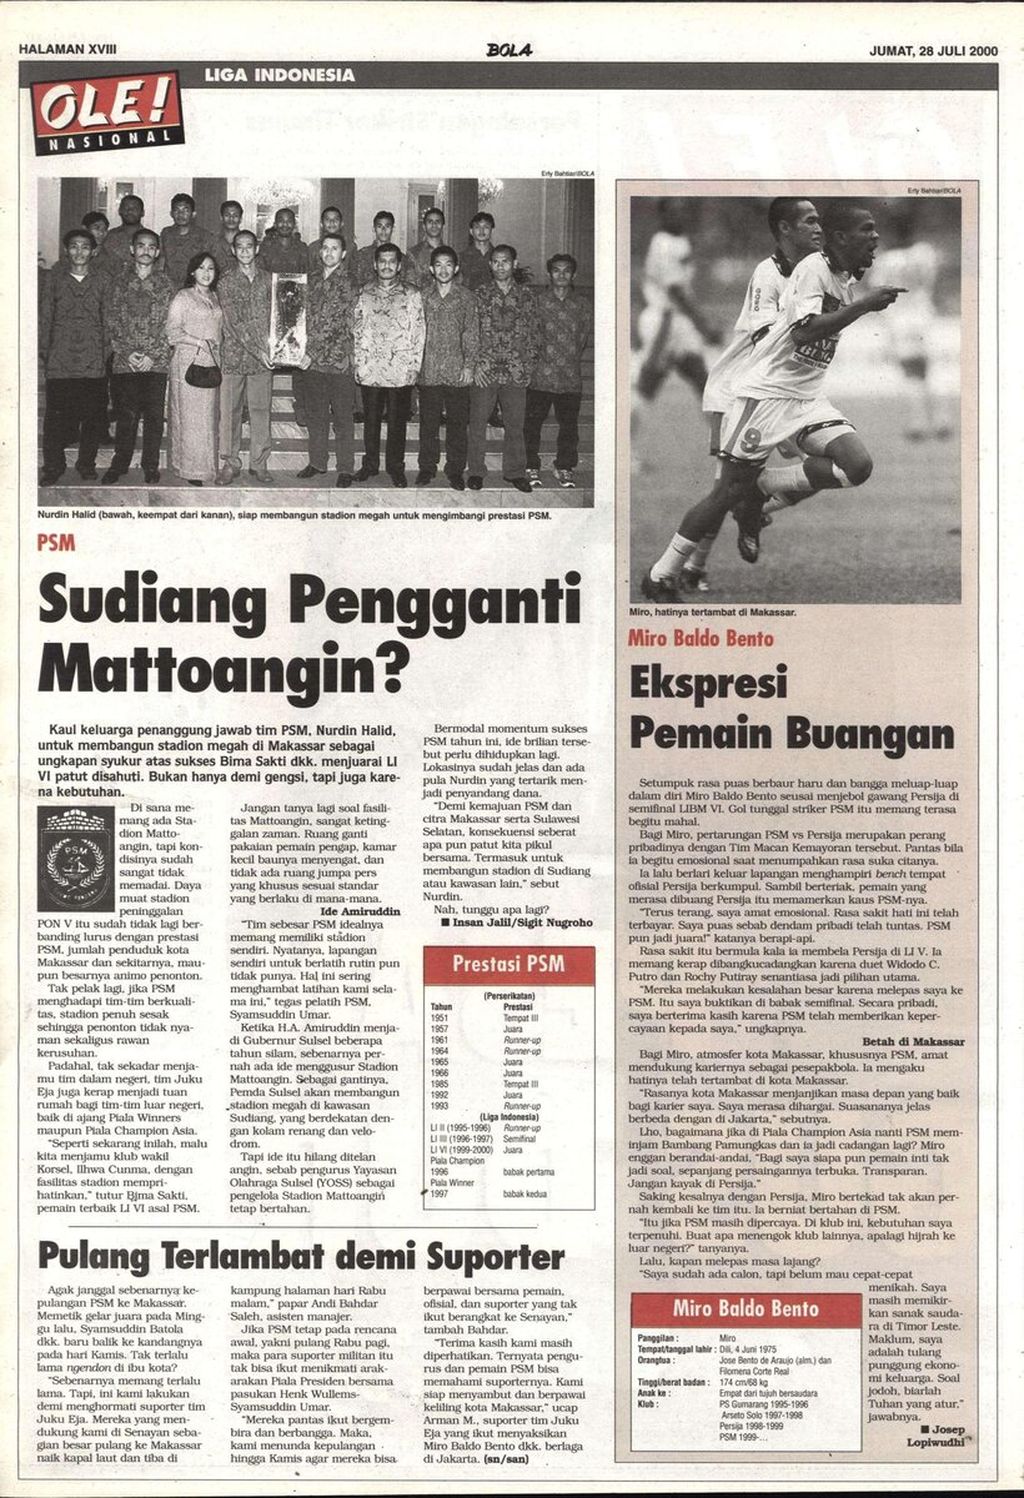 Halaman 18 tabloid <i>Bola</i> edisi Jumat, 28 Juli 2000, yang mengulas rencana PSM Makassar membangun stadion baru setelah menjadi juara Liga Bank Mandiri 1999-2000.